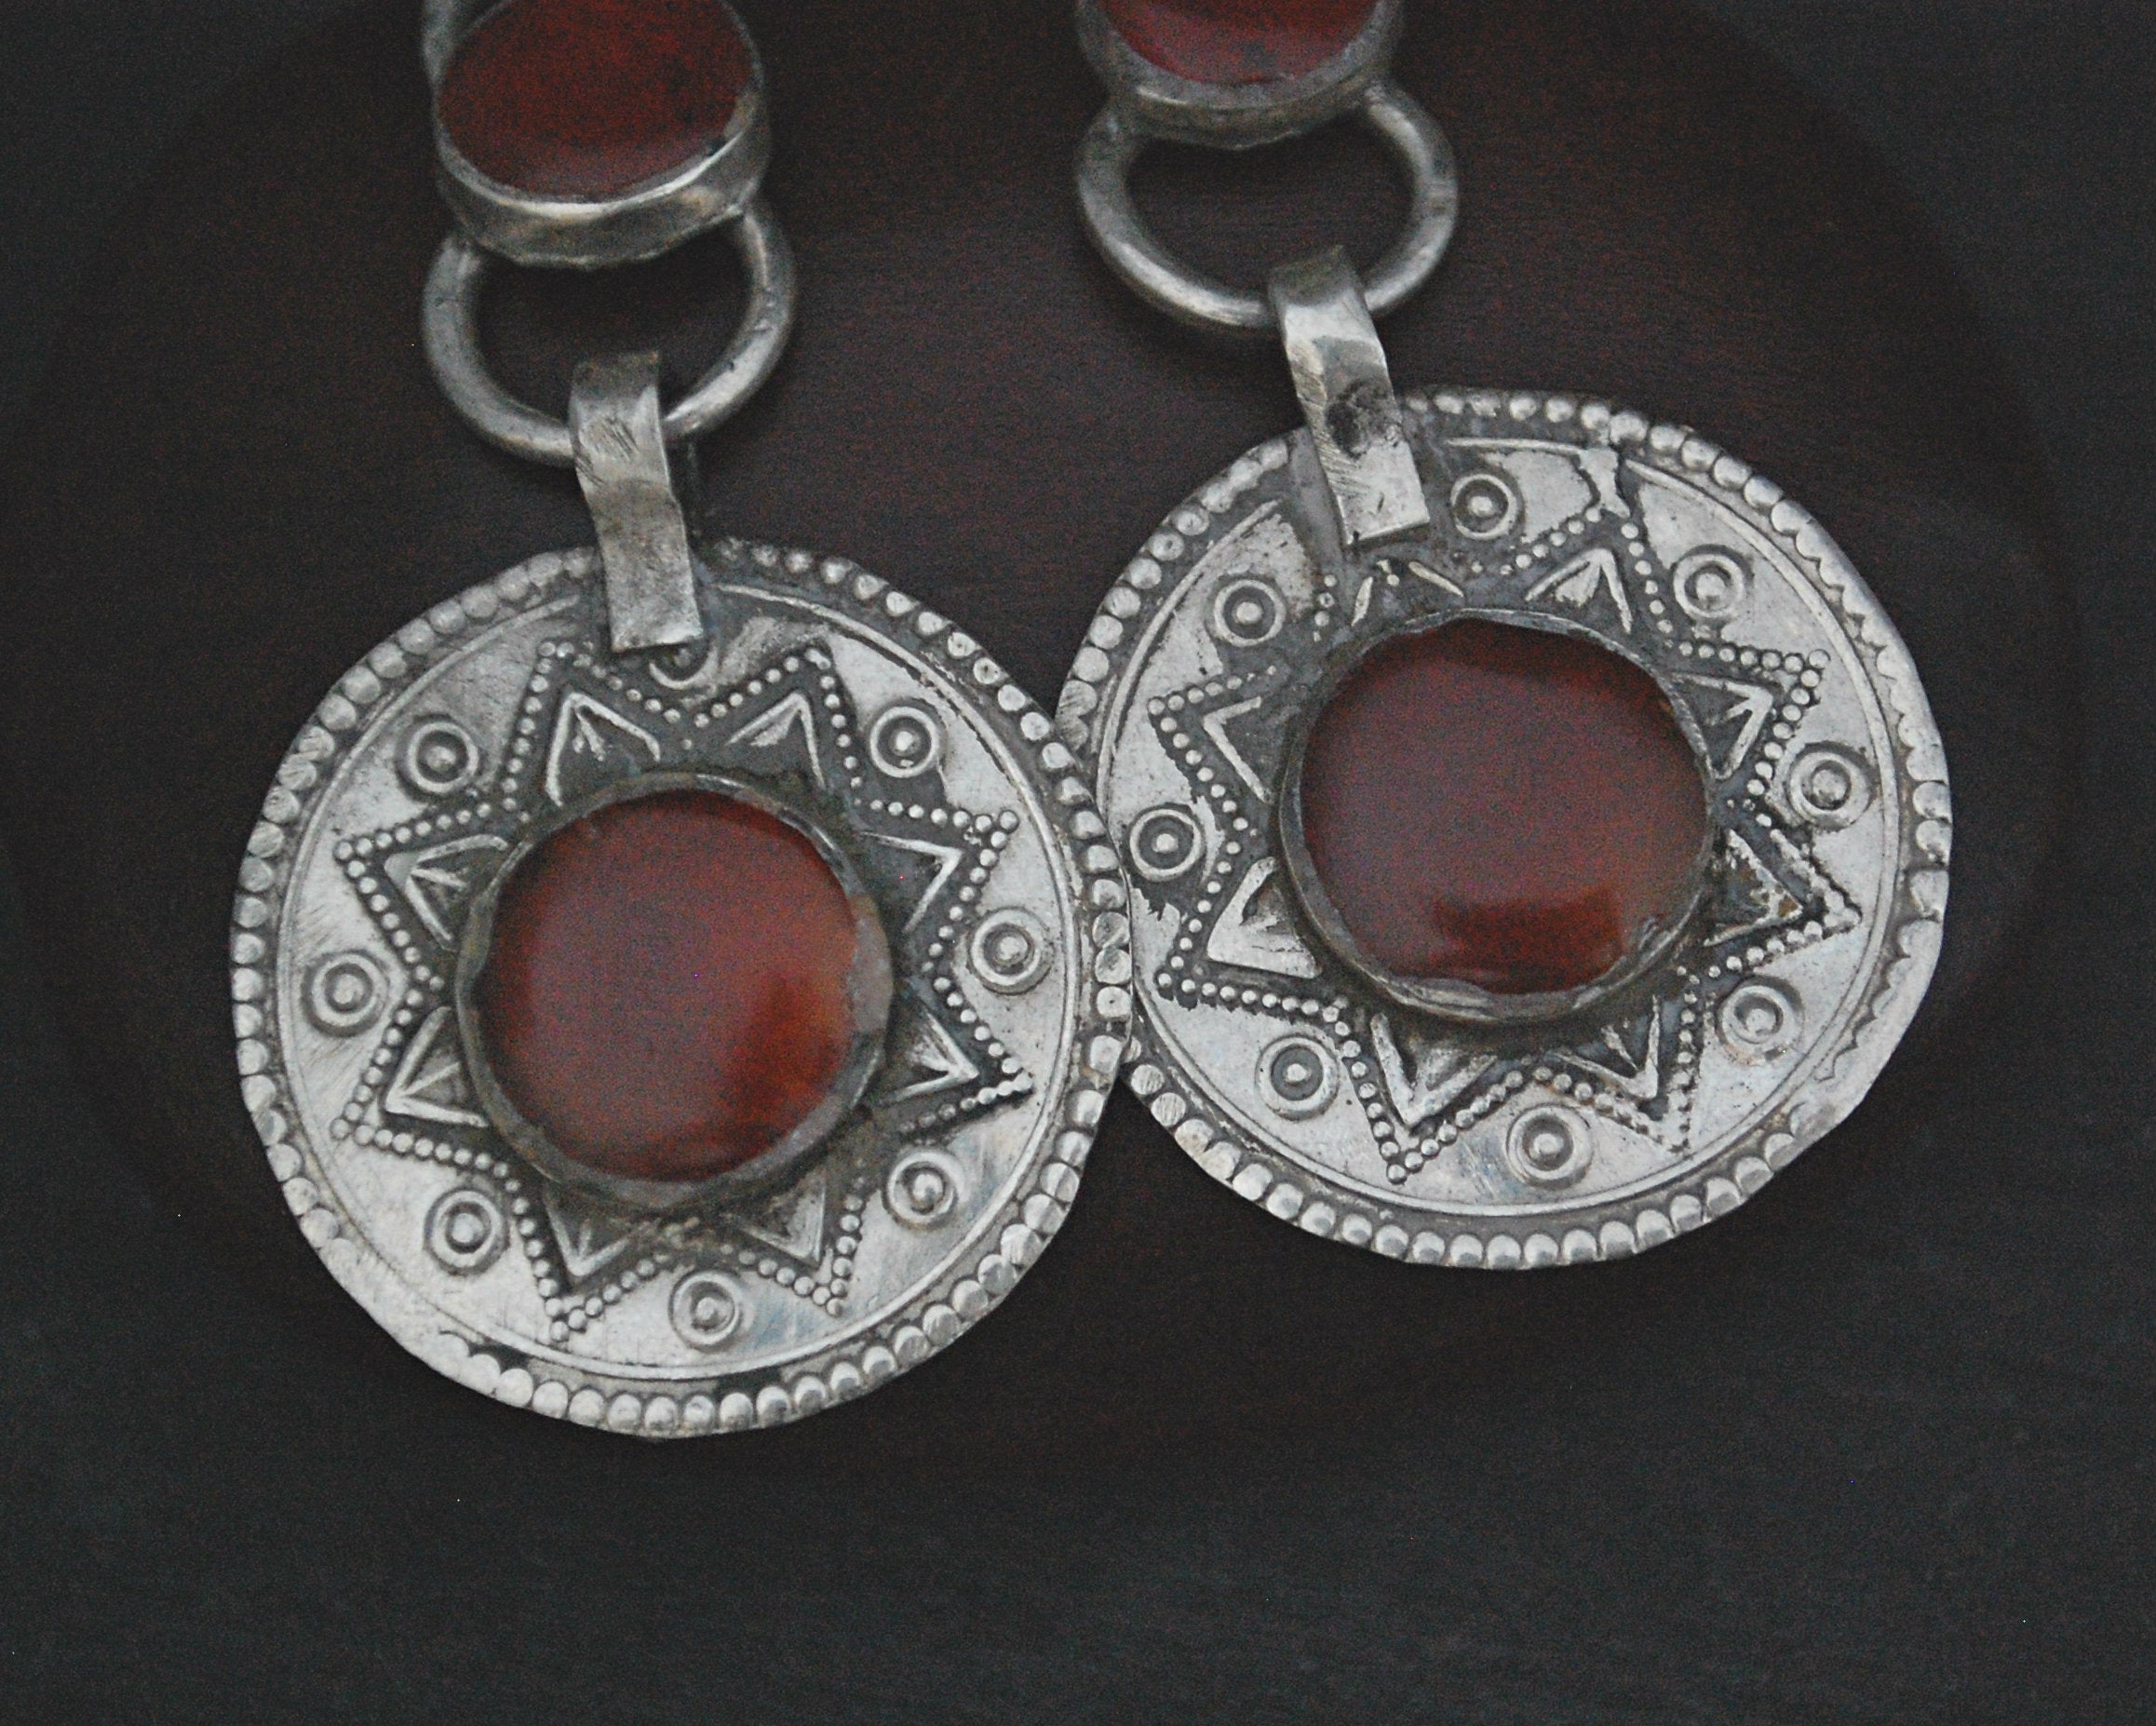 Afghani Carnelian Dangle Earrings